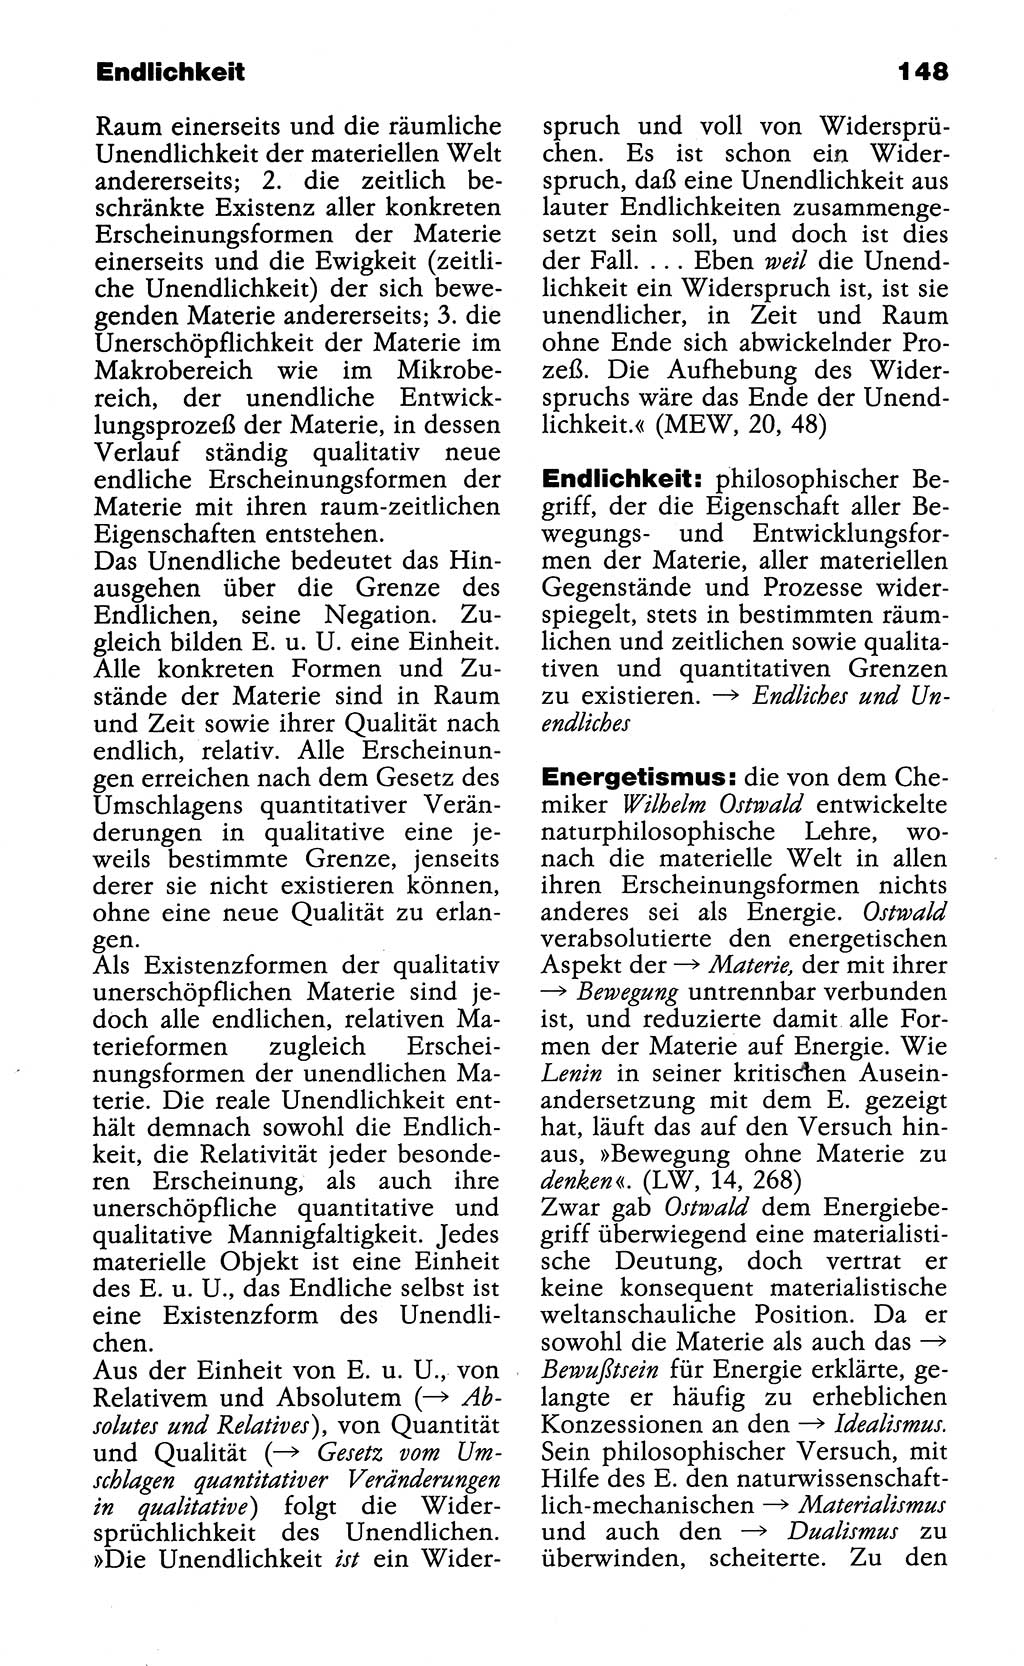 Wörterbuch der marxistisch-leninistischen Philosophie [Deutsche Demokratische Republik (DDR)] 1985, Seite 148 (Wb. ML Phil. DDR 1985, S. 148)